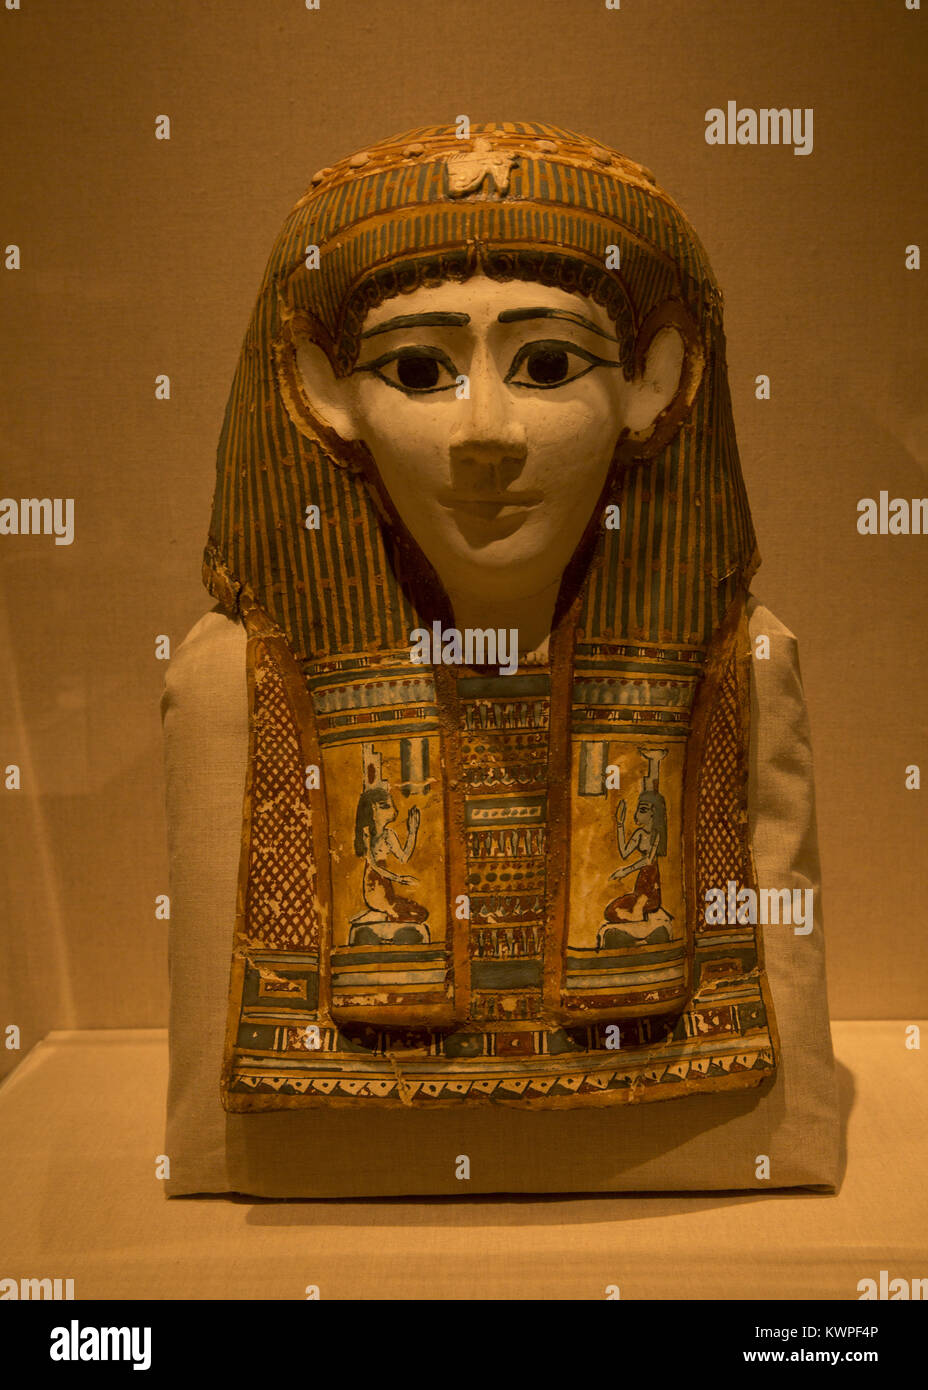 Masque de momie d'une femme : Linge de maison, le stuc, peinture, 1er siècle avant notre ère, d'Egypte, Musée de Brooklyn. Banque D'Images